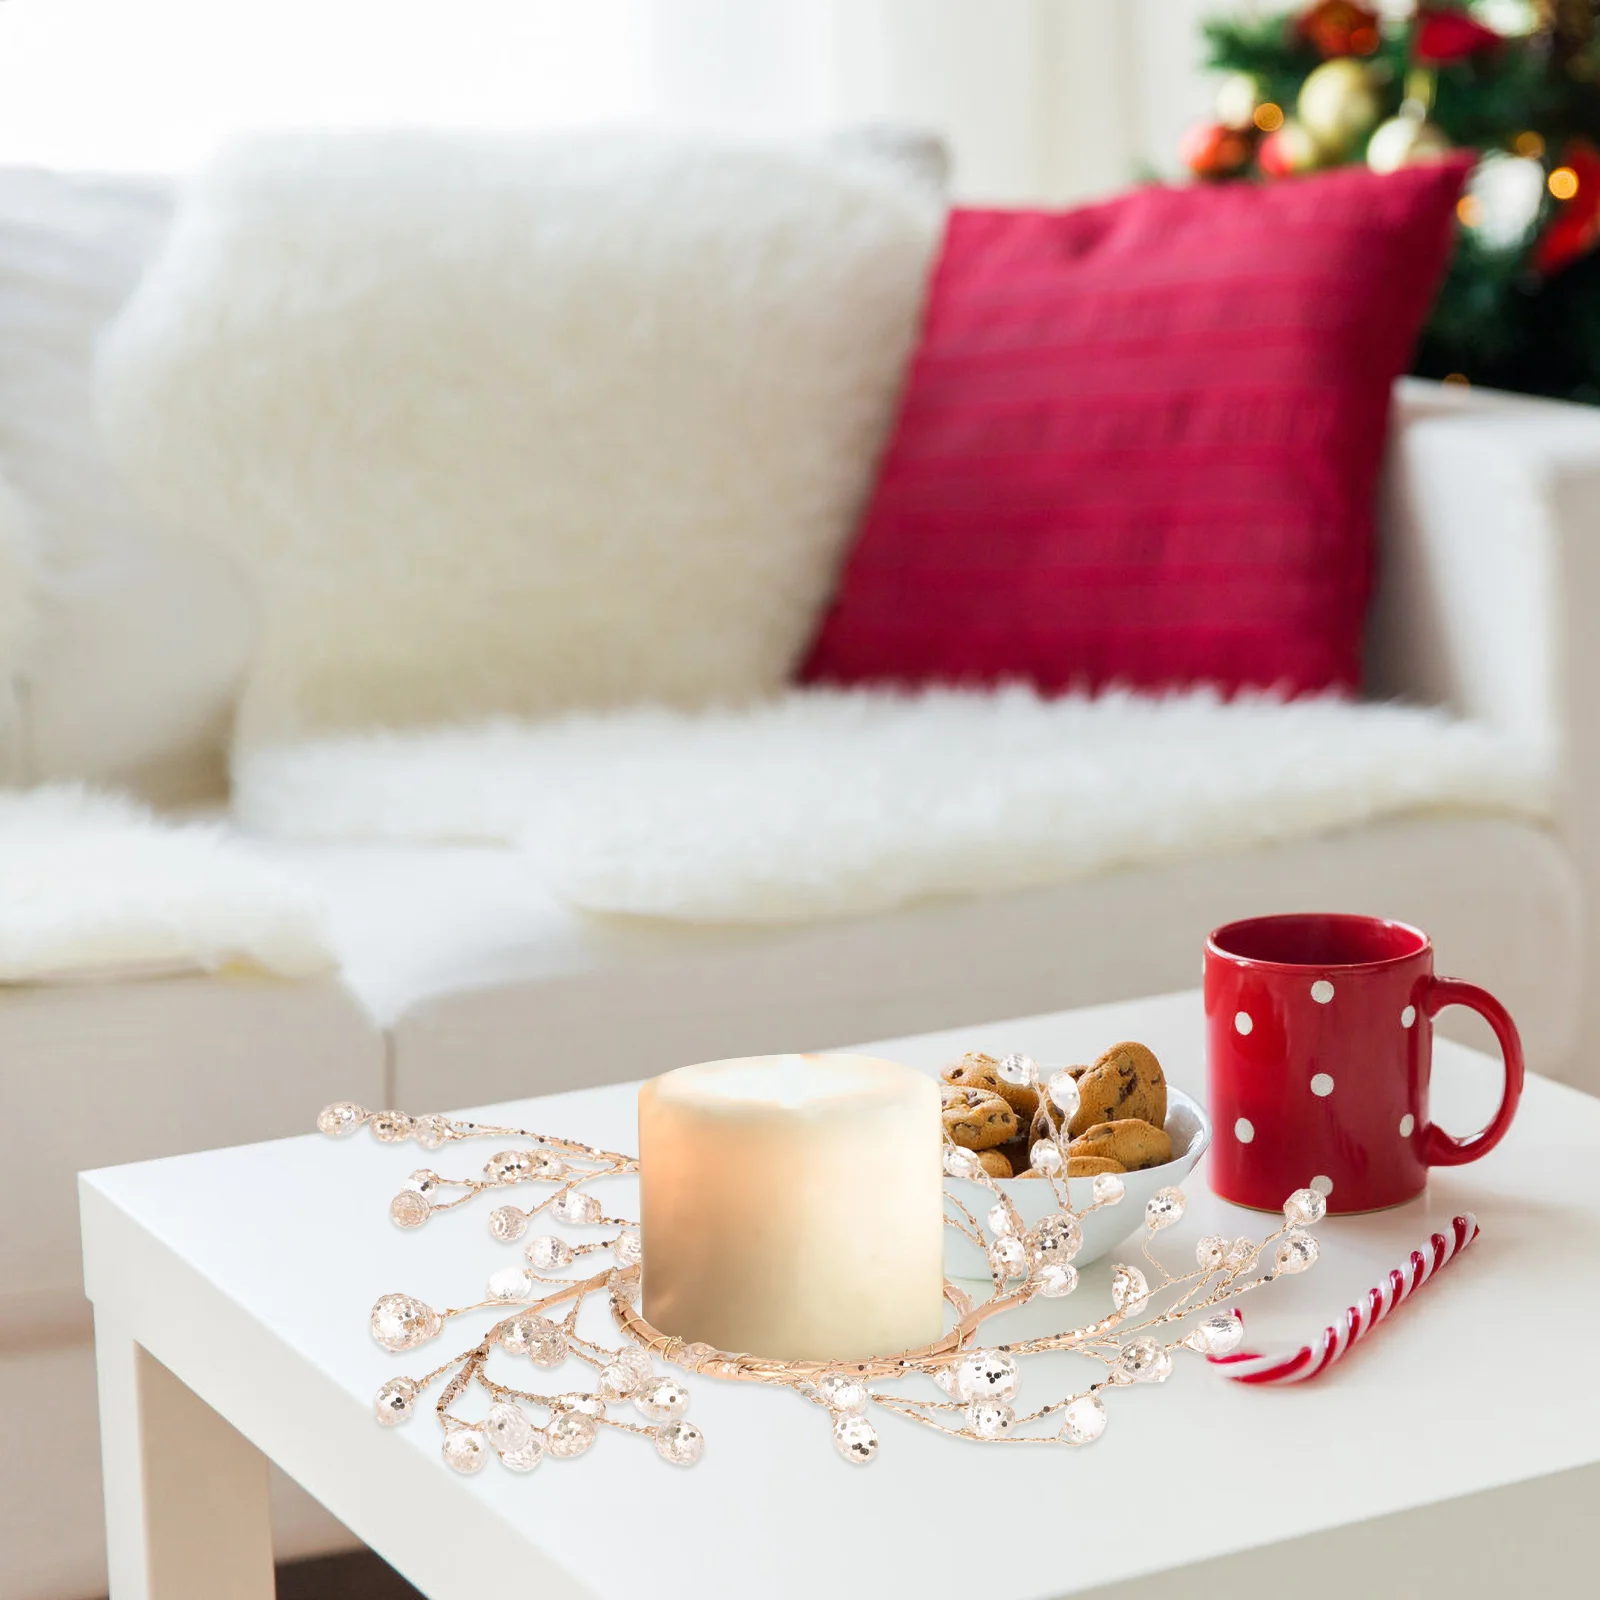 Karácsonyi kristály akril gyöngy koszorútartó koszorútartó koszorúgyűrű karácsonyi dekorációs középpont